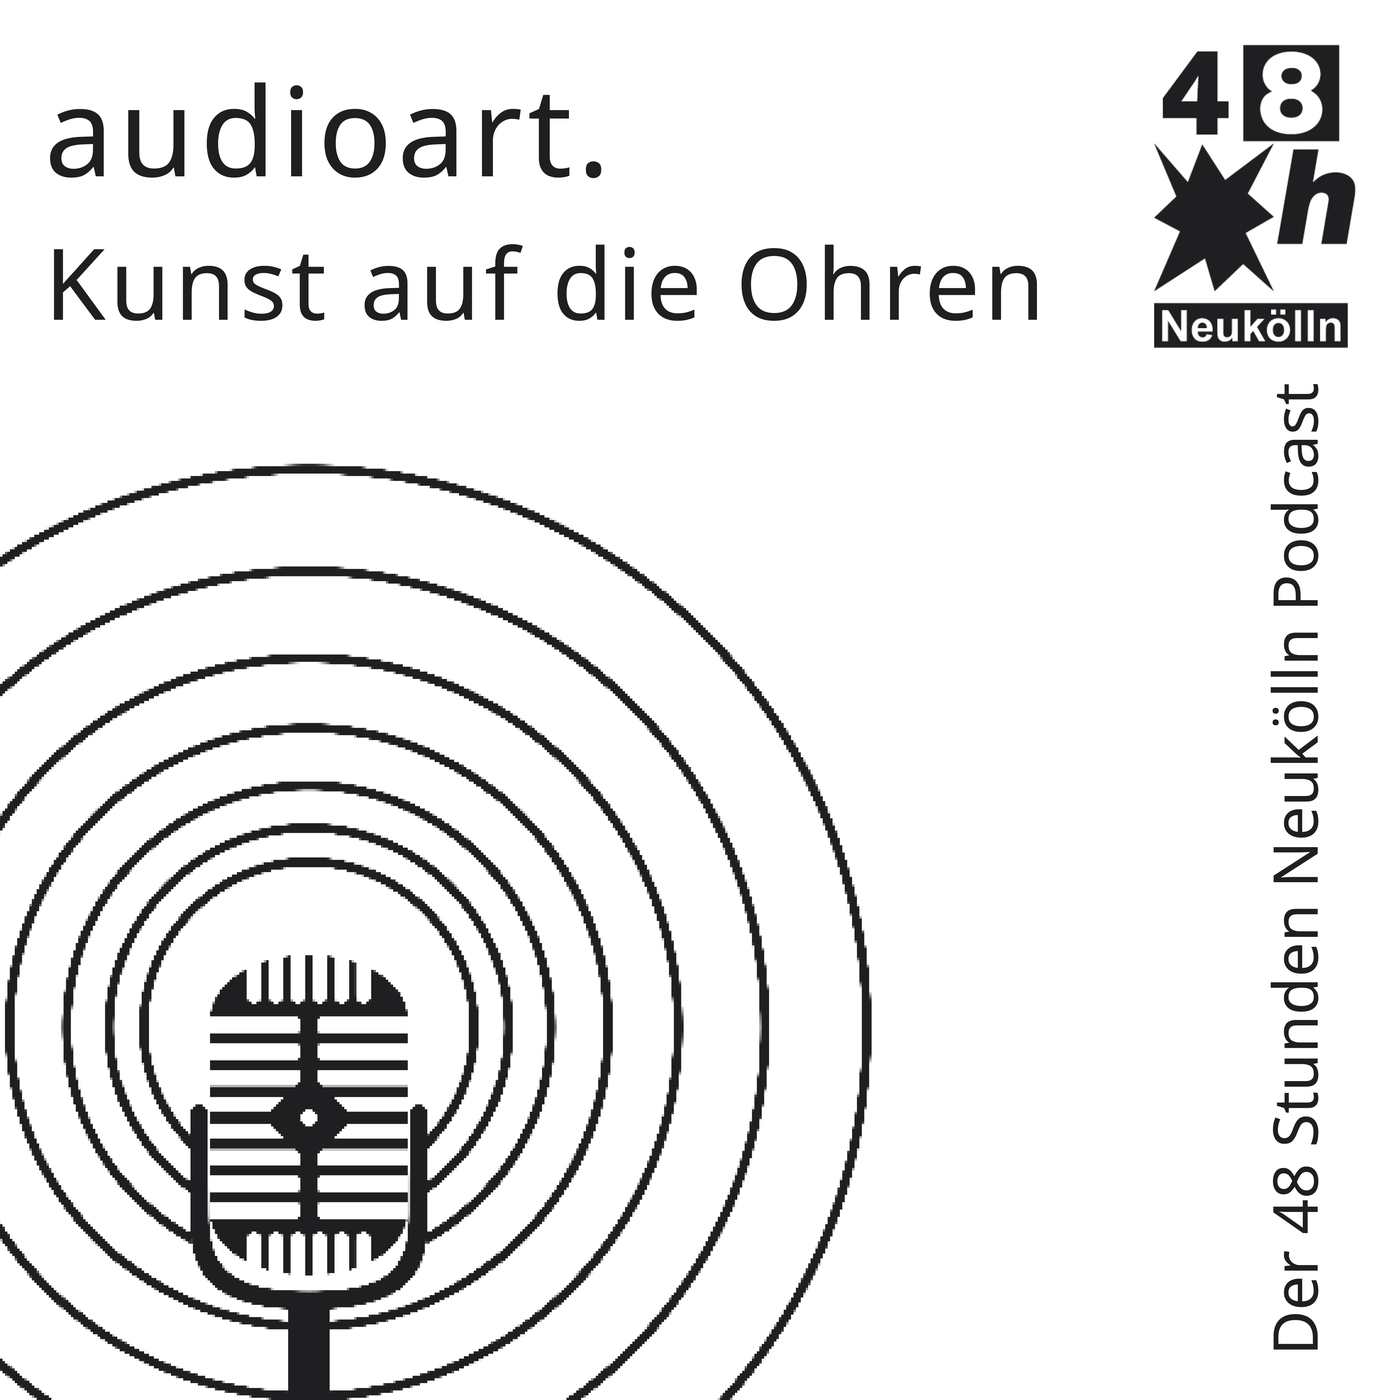 audioart - Kunst auf die Ohren